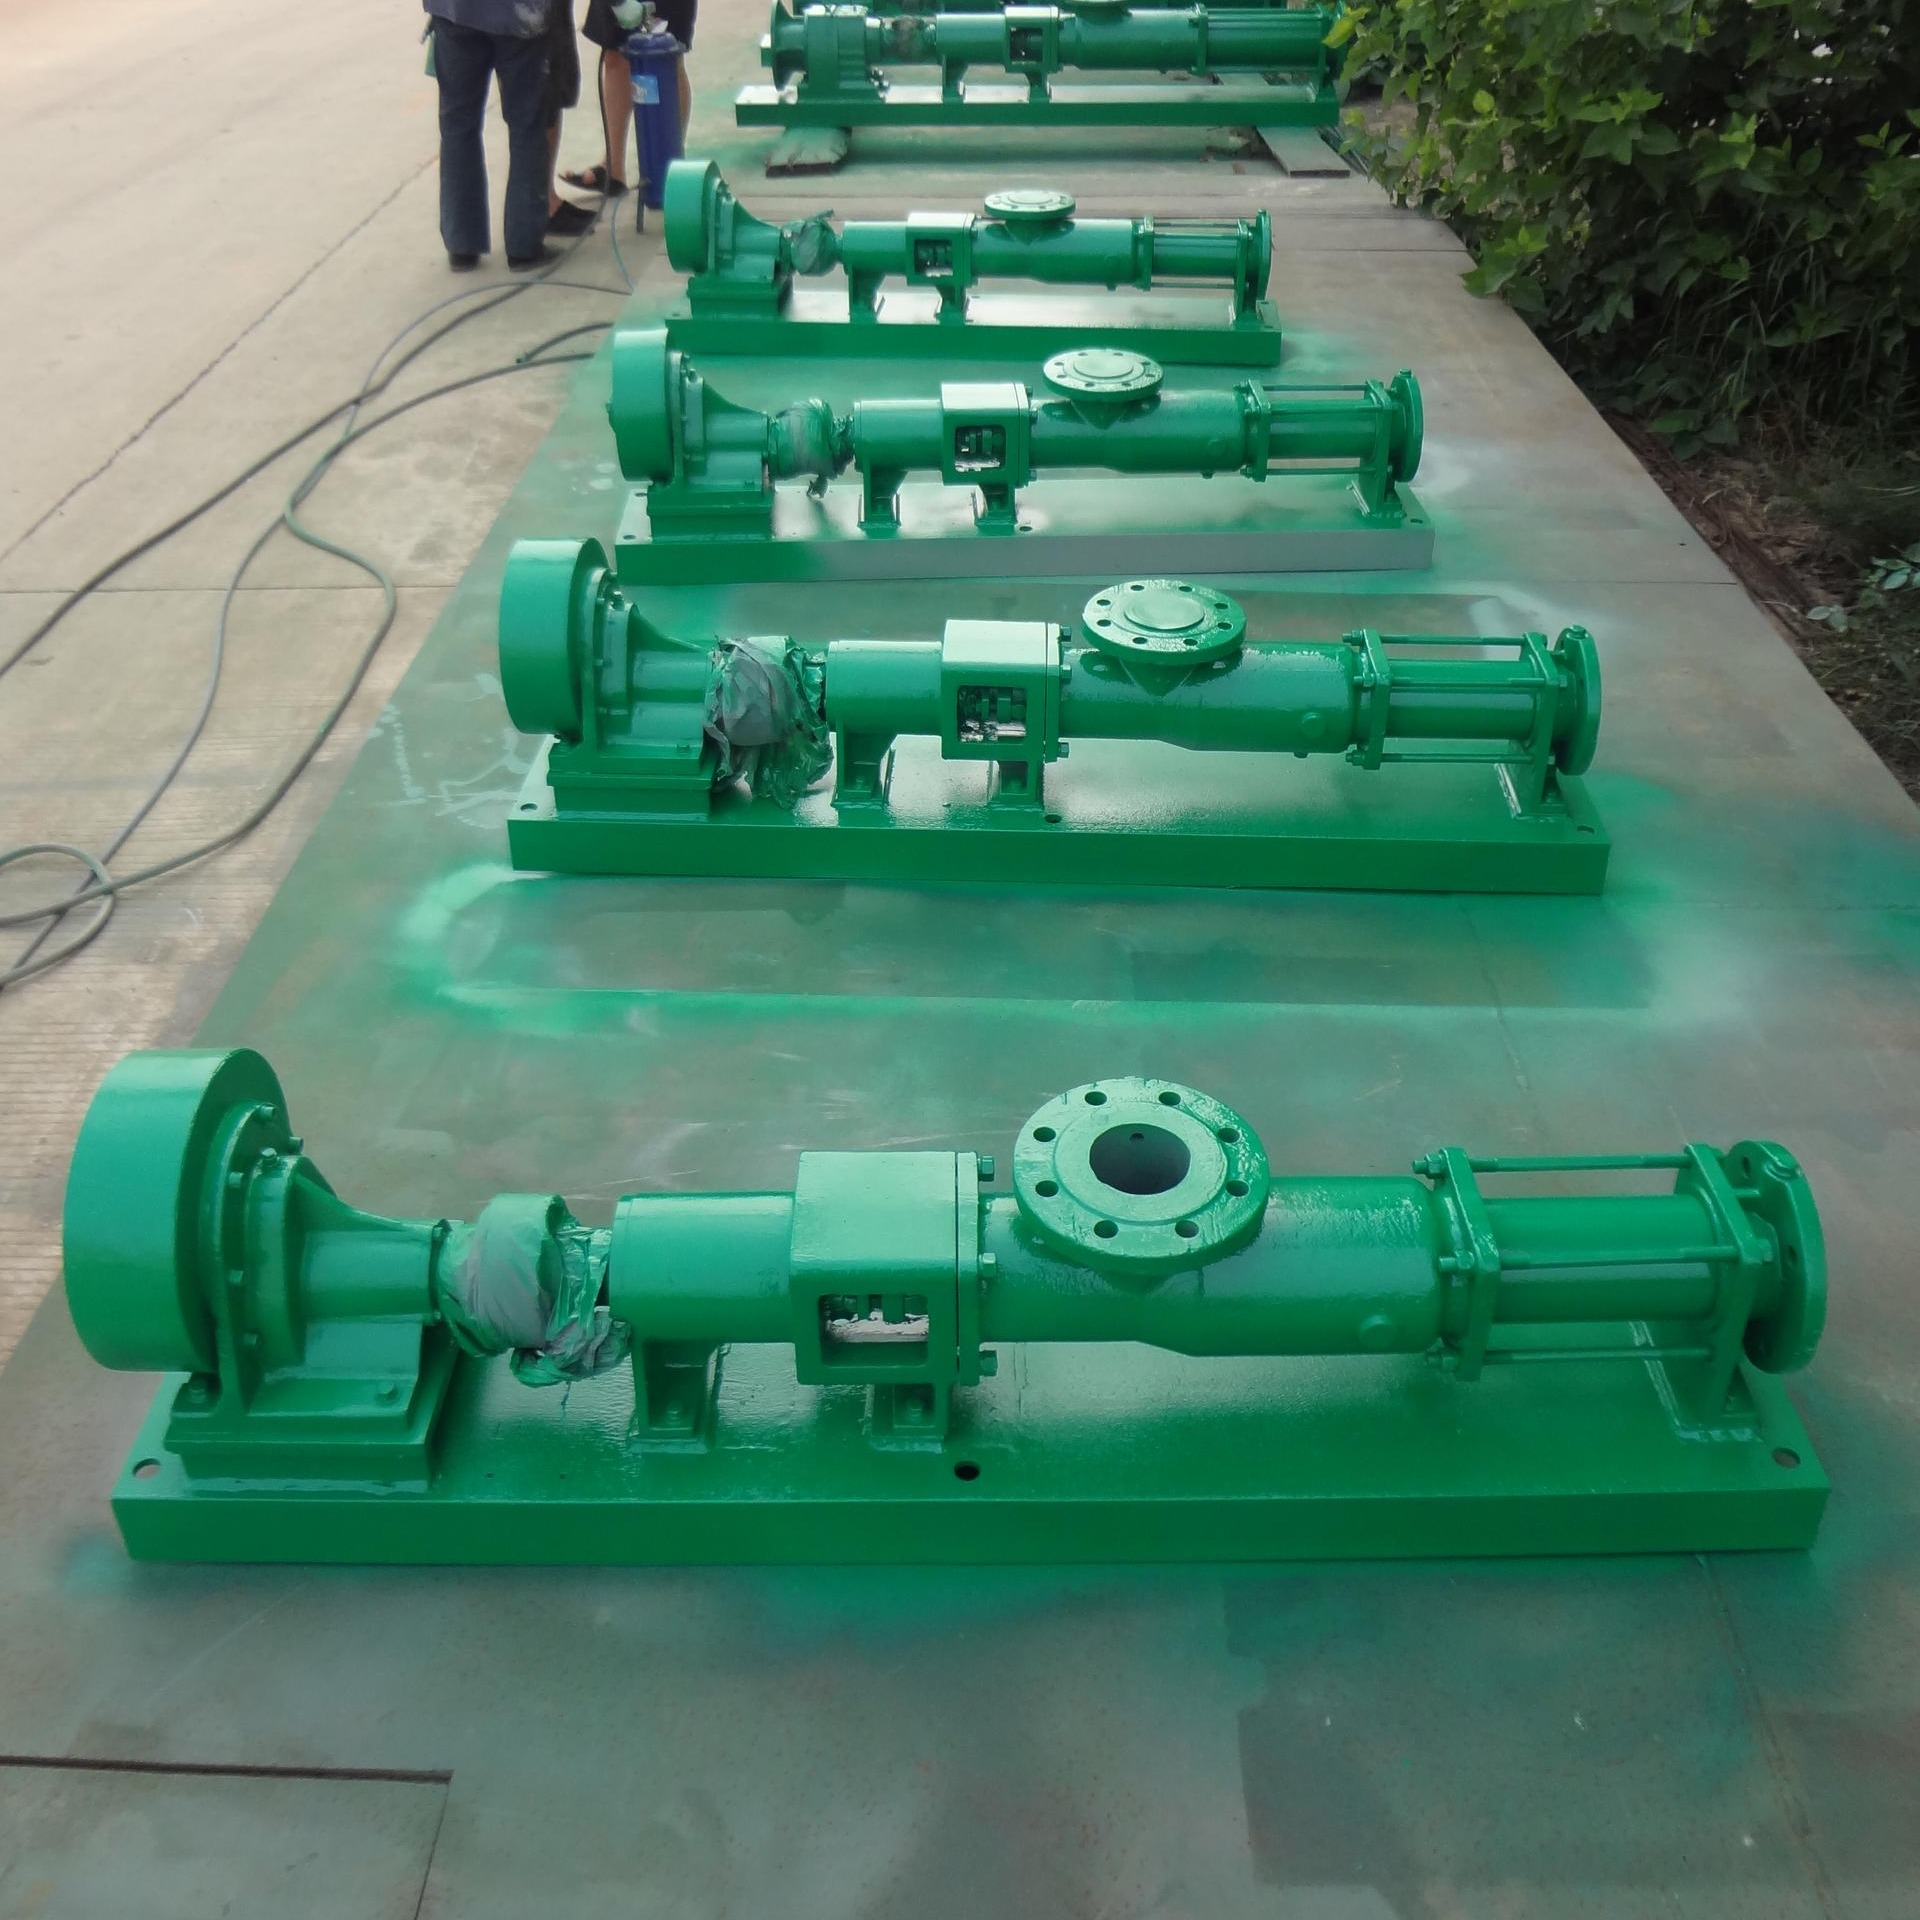 G系列单螺杆泵  污泥泵G105-1V-W101 输送污水污泥质量有保证 天津远东厂家直销 量大从优